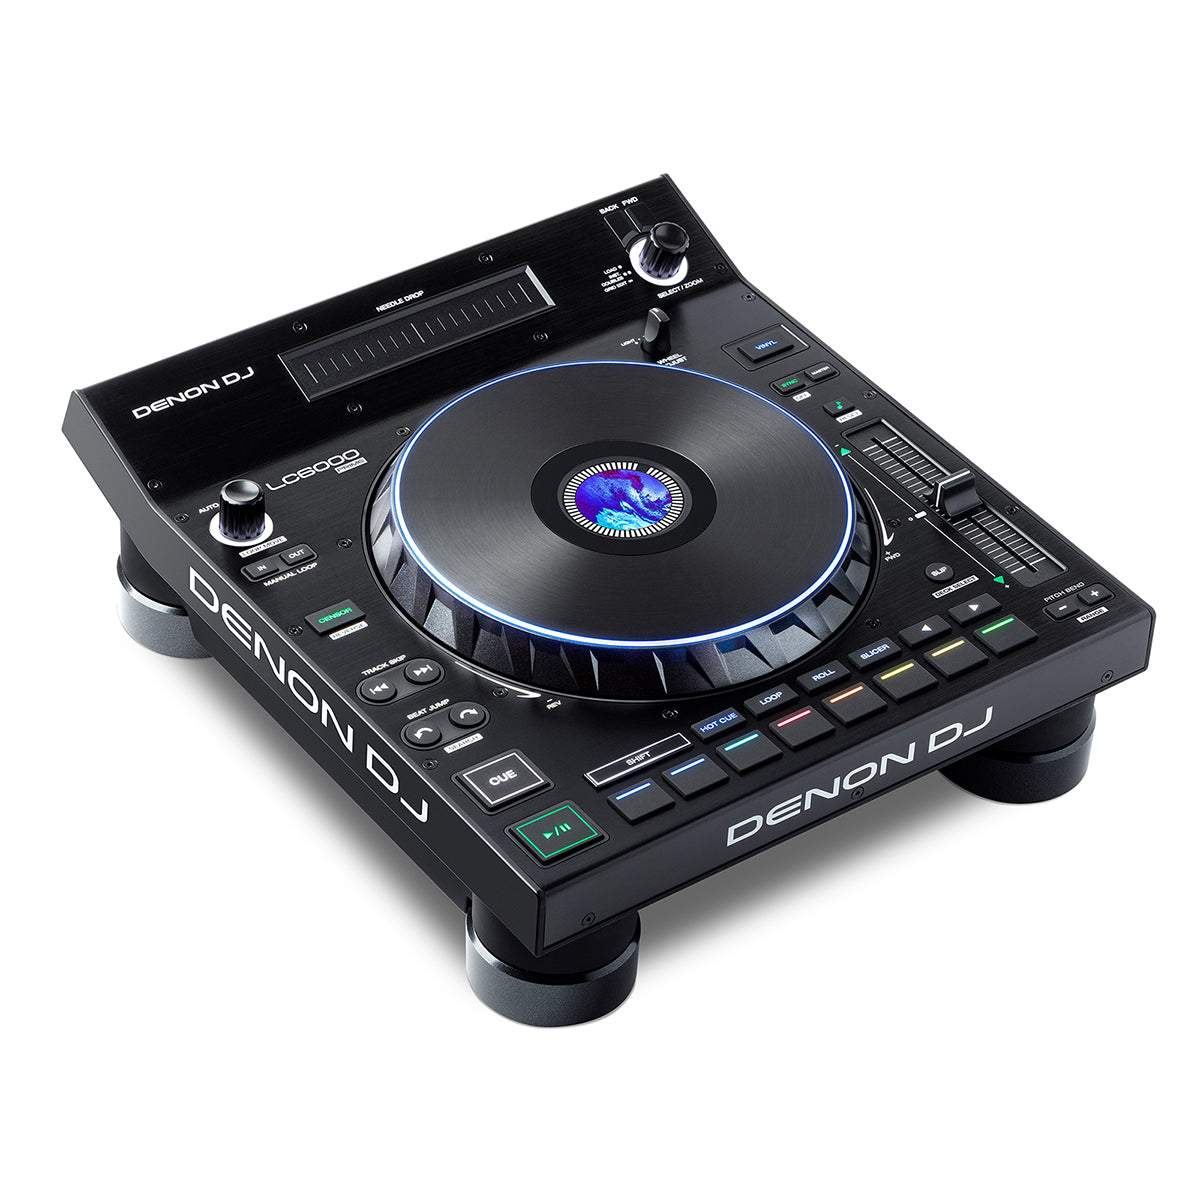 Denon DJ SC6000M + FREE LC6000 Prime Bundle